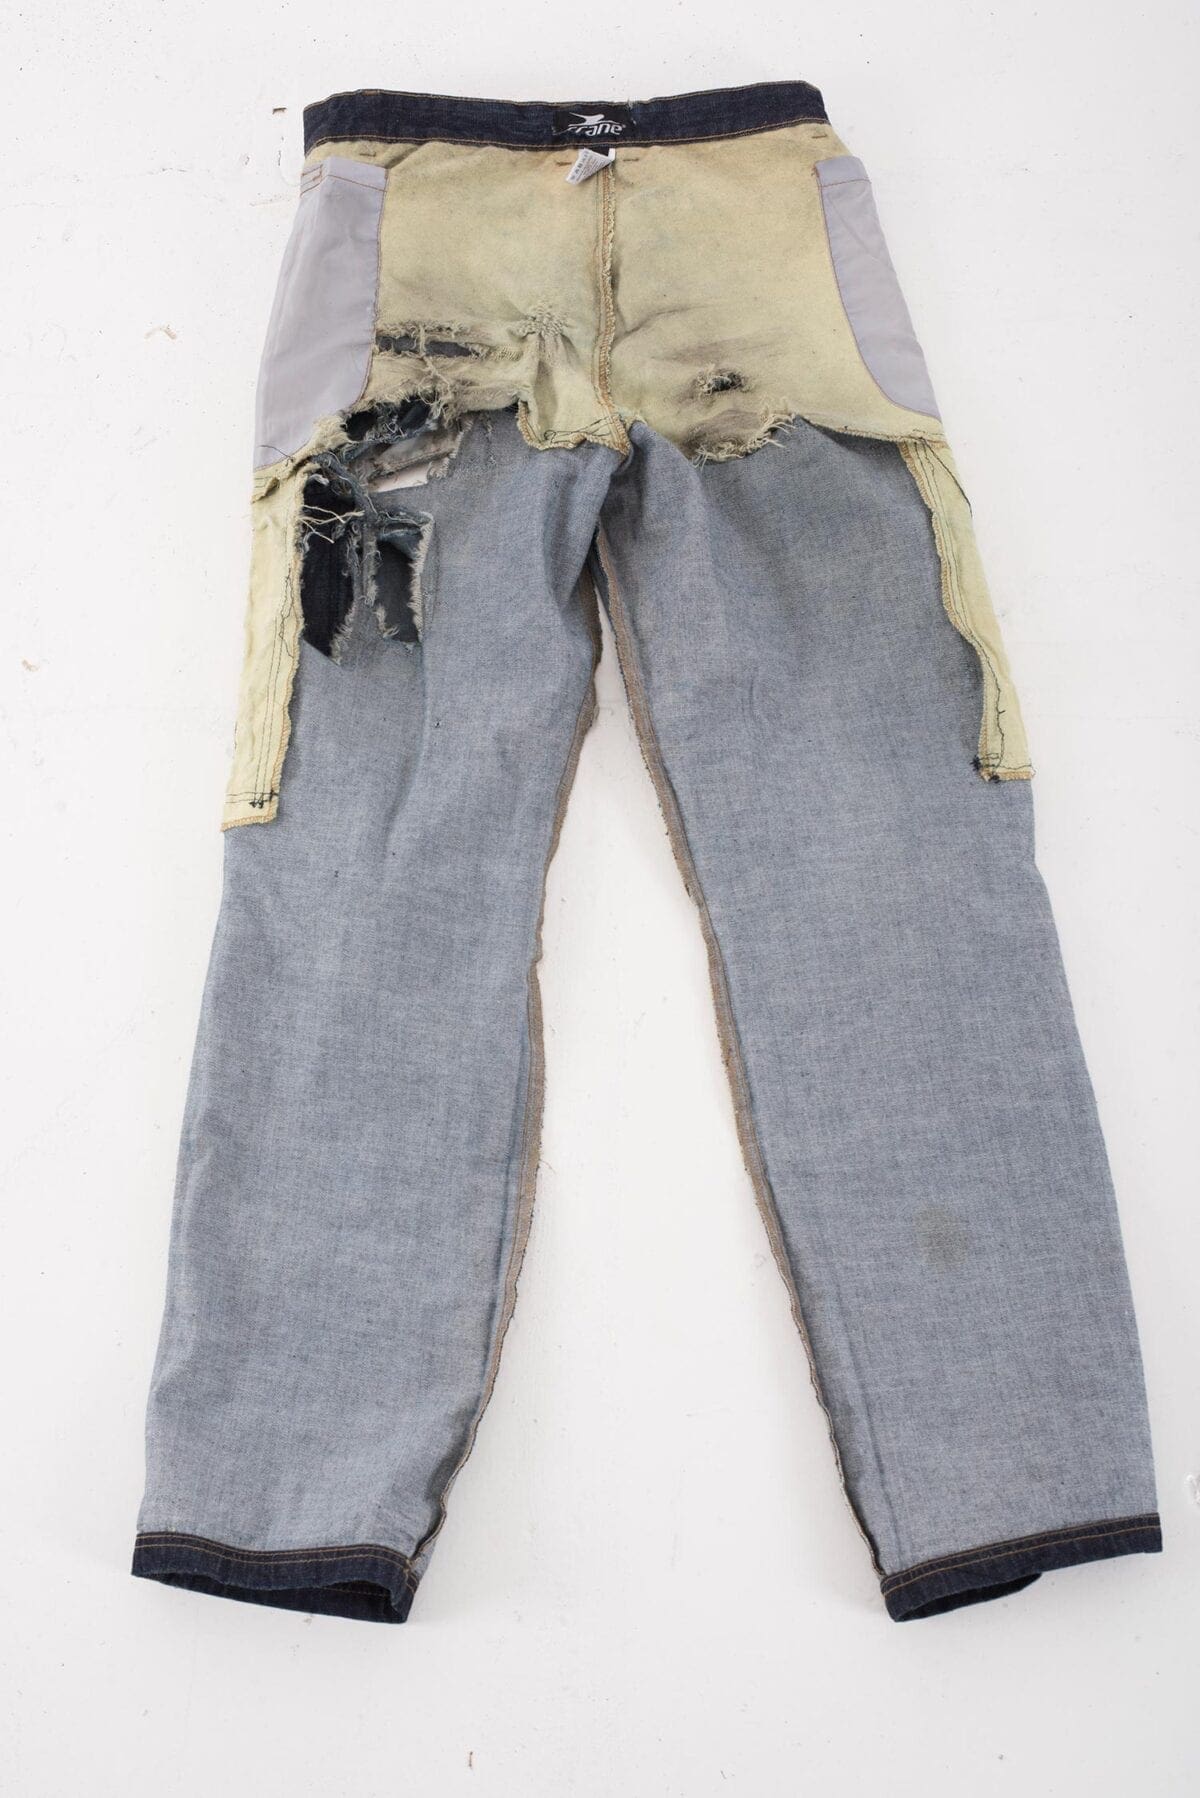 053_Aldi-para-aramid-jeans-015